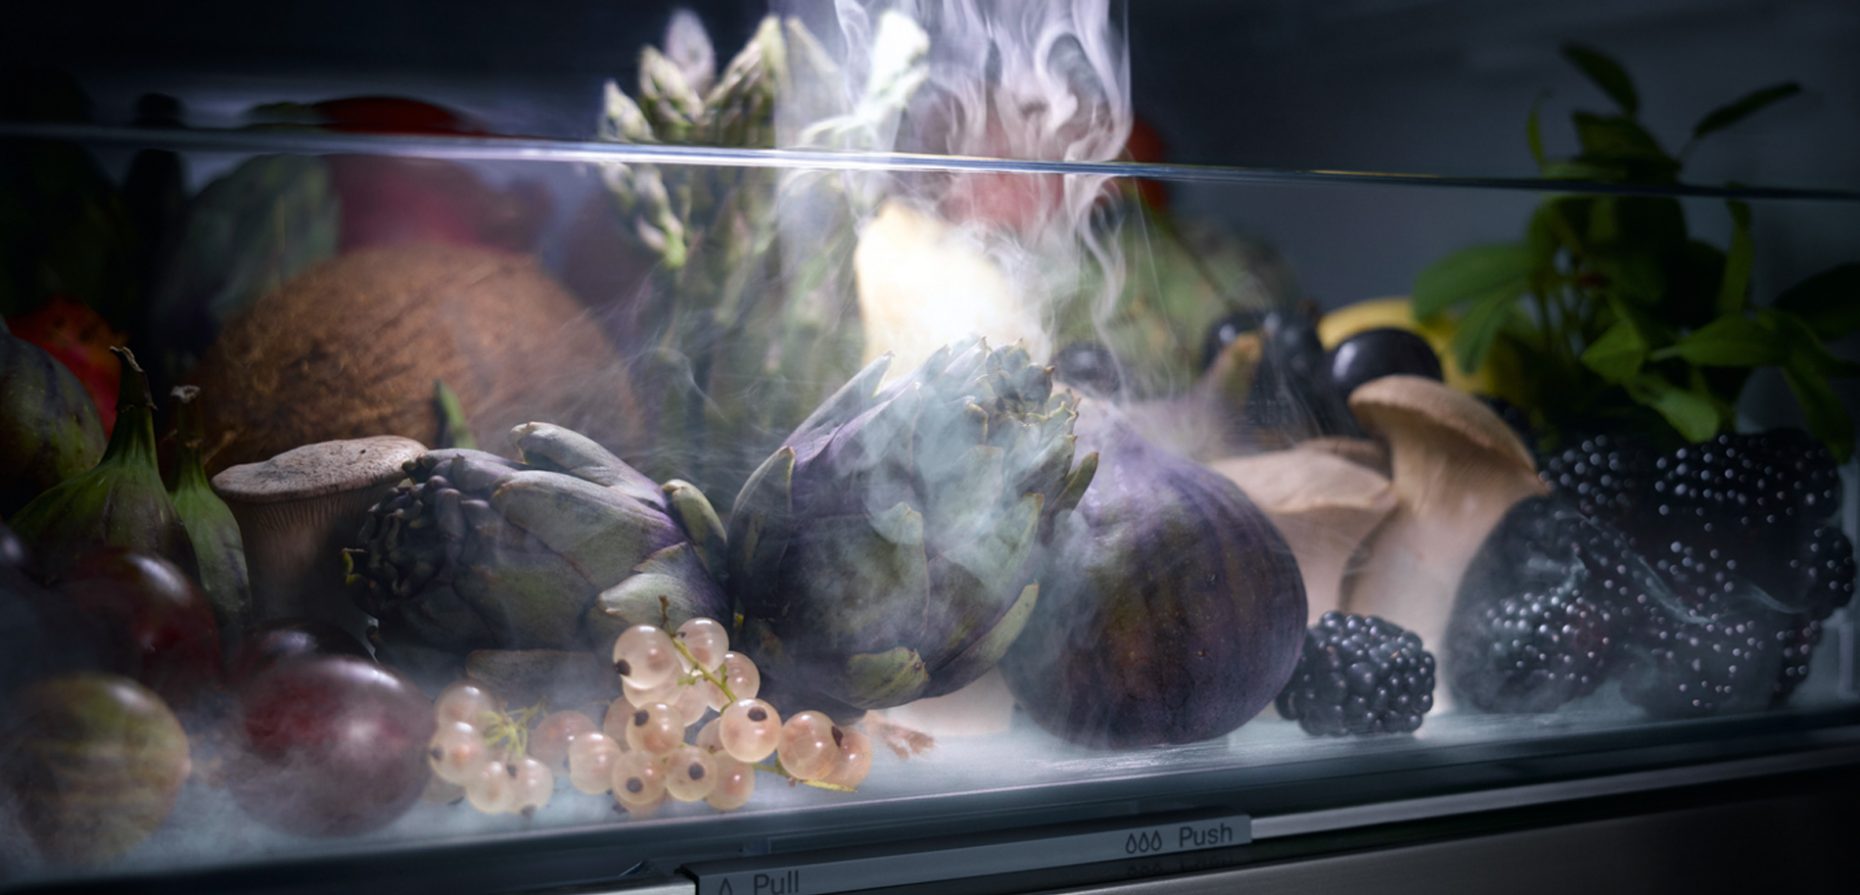 Smartes Design gegen Food Waste: Das Titelbild zeigt das Miele-System PerfectFresh Active, das mithilfe von Sprühnebel dafür sorgt, dass Obst und Gemüse bis zu fünfmal länger frisch bleibt. © Miele